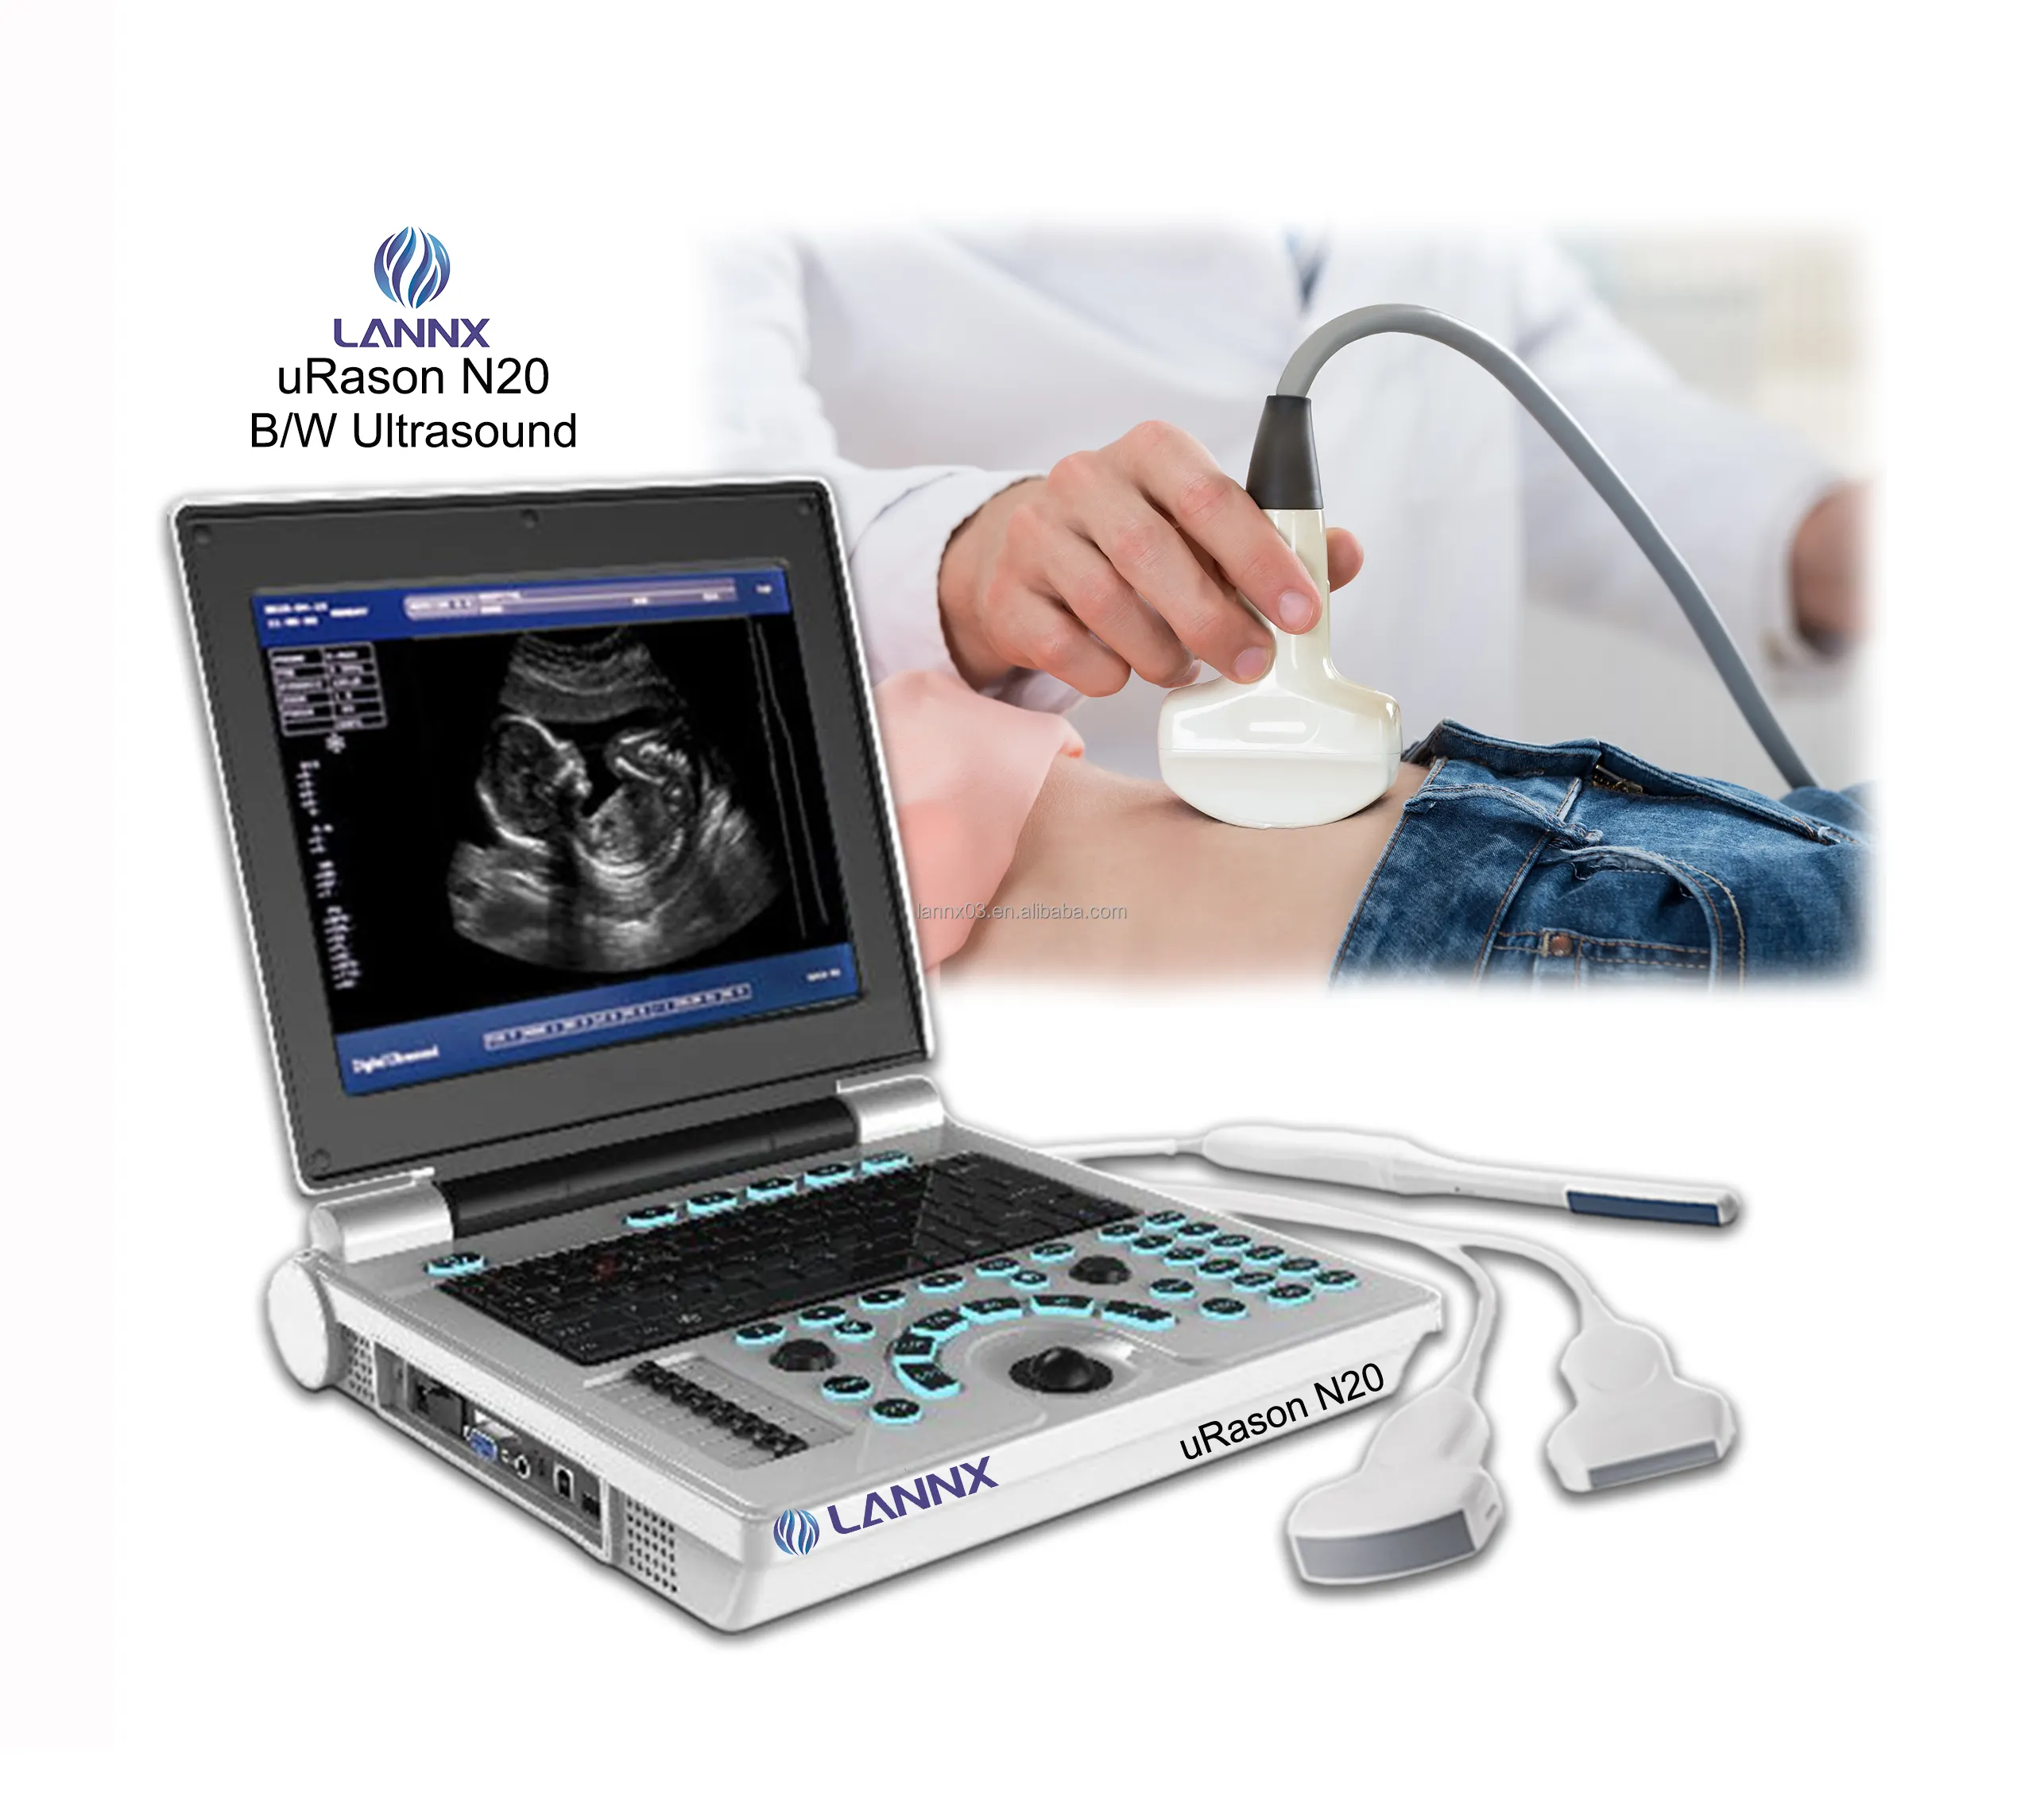 LANNX uRason N20 HD tıbbi renkli ekran taşınabilir ultrason tarayıcı B/W ultrasonido teşhis sistemi makine doğum için